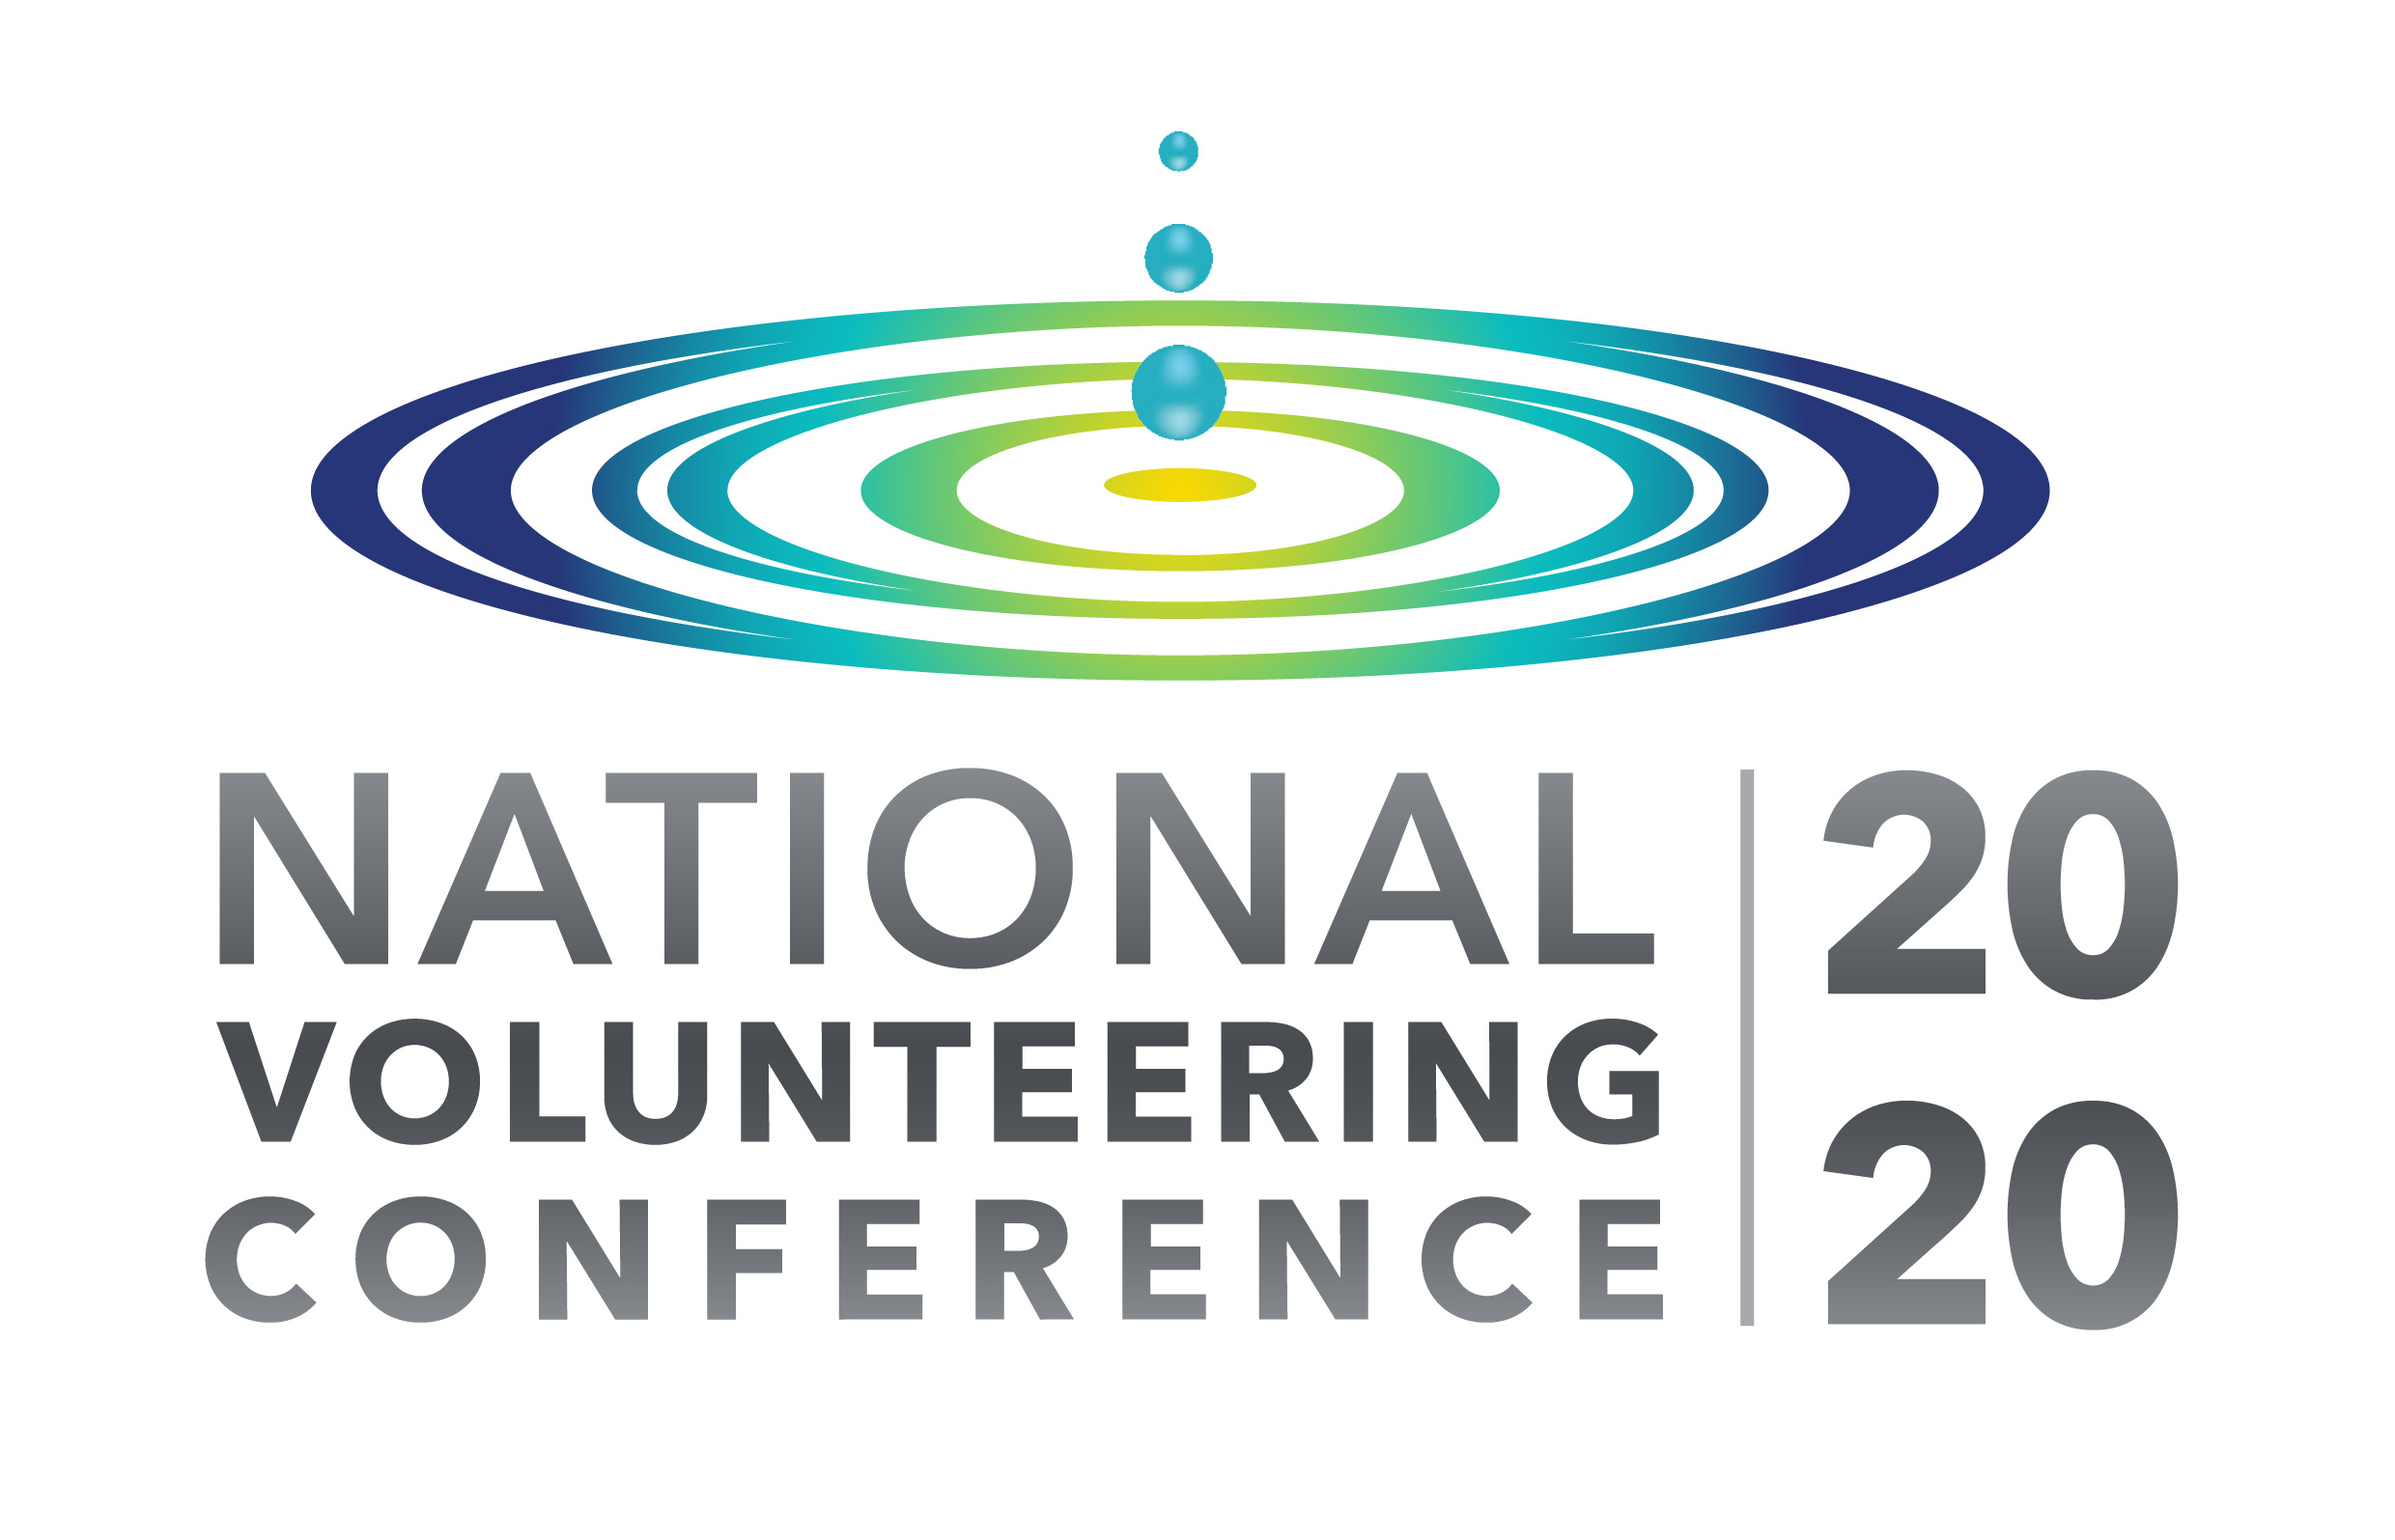 National Volunteering Conference 2020 FRSA